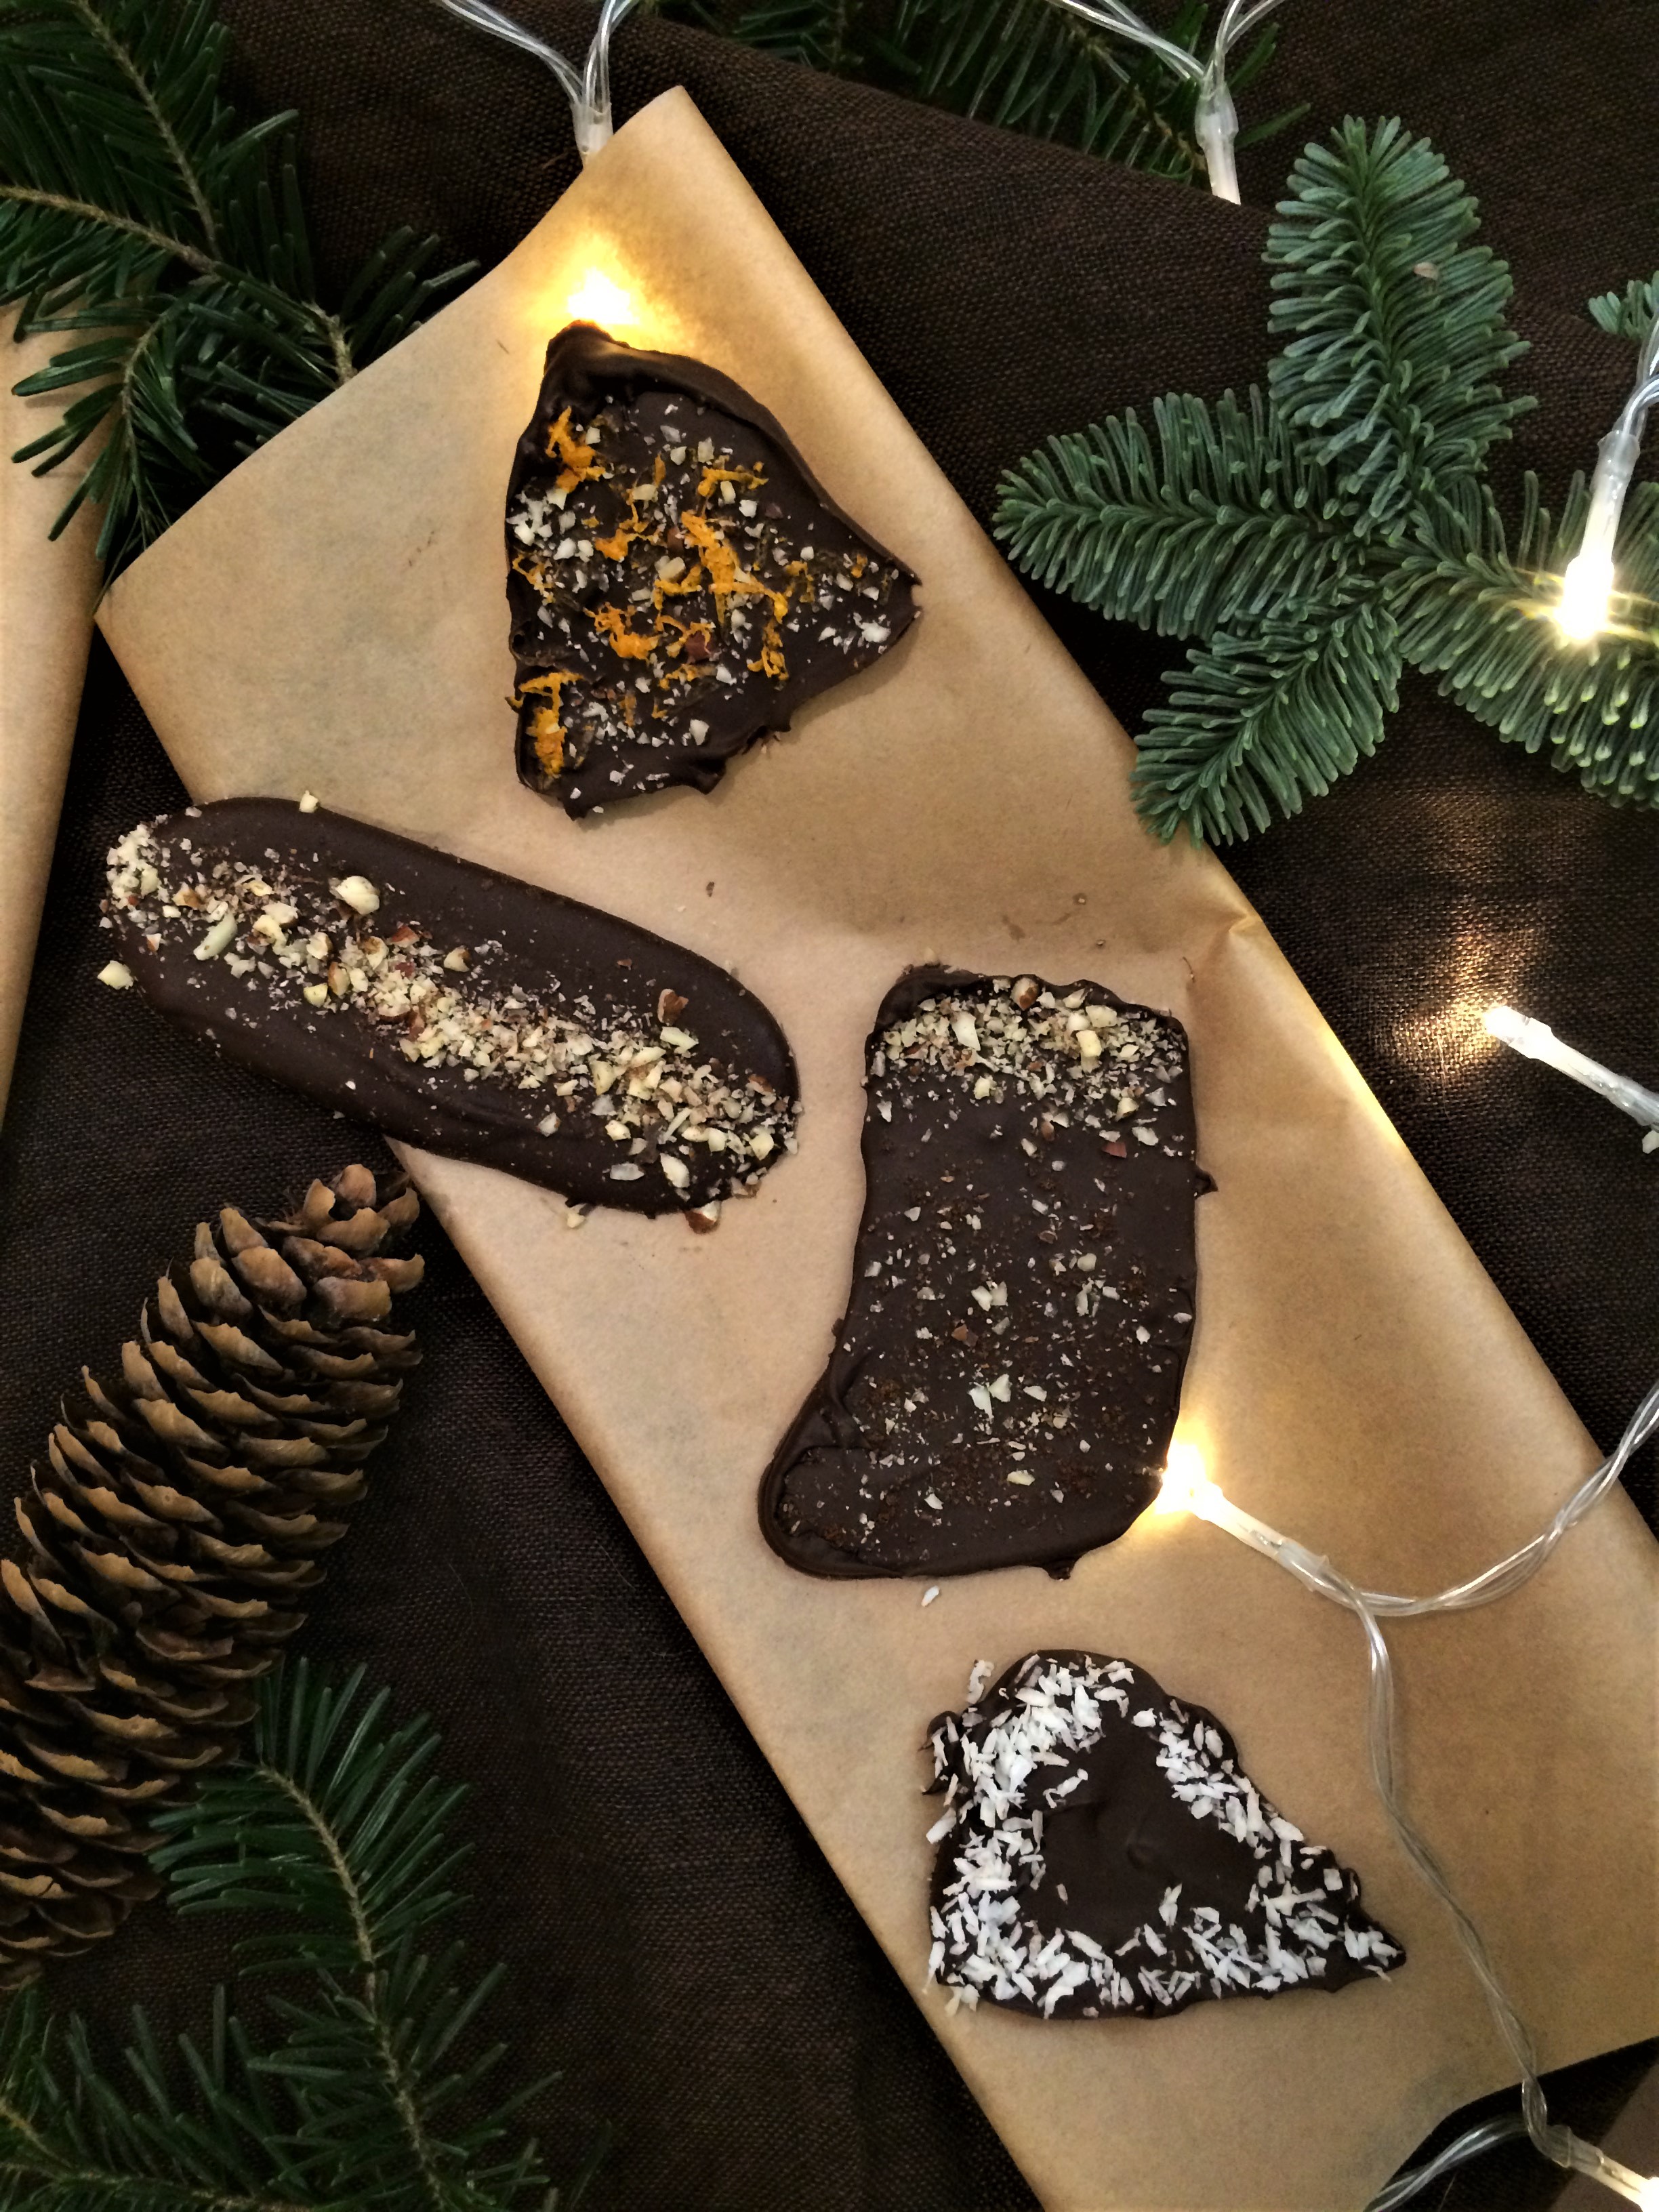 Domowe czekoladki na Święta i nie tylko